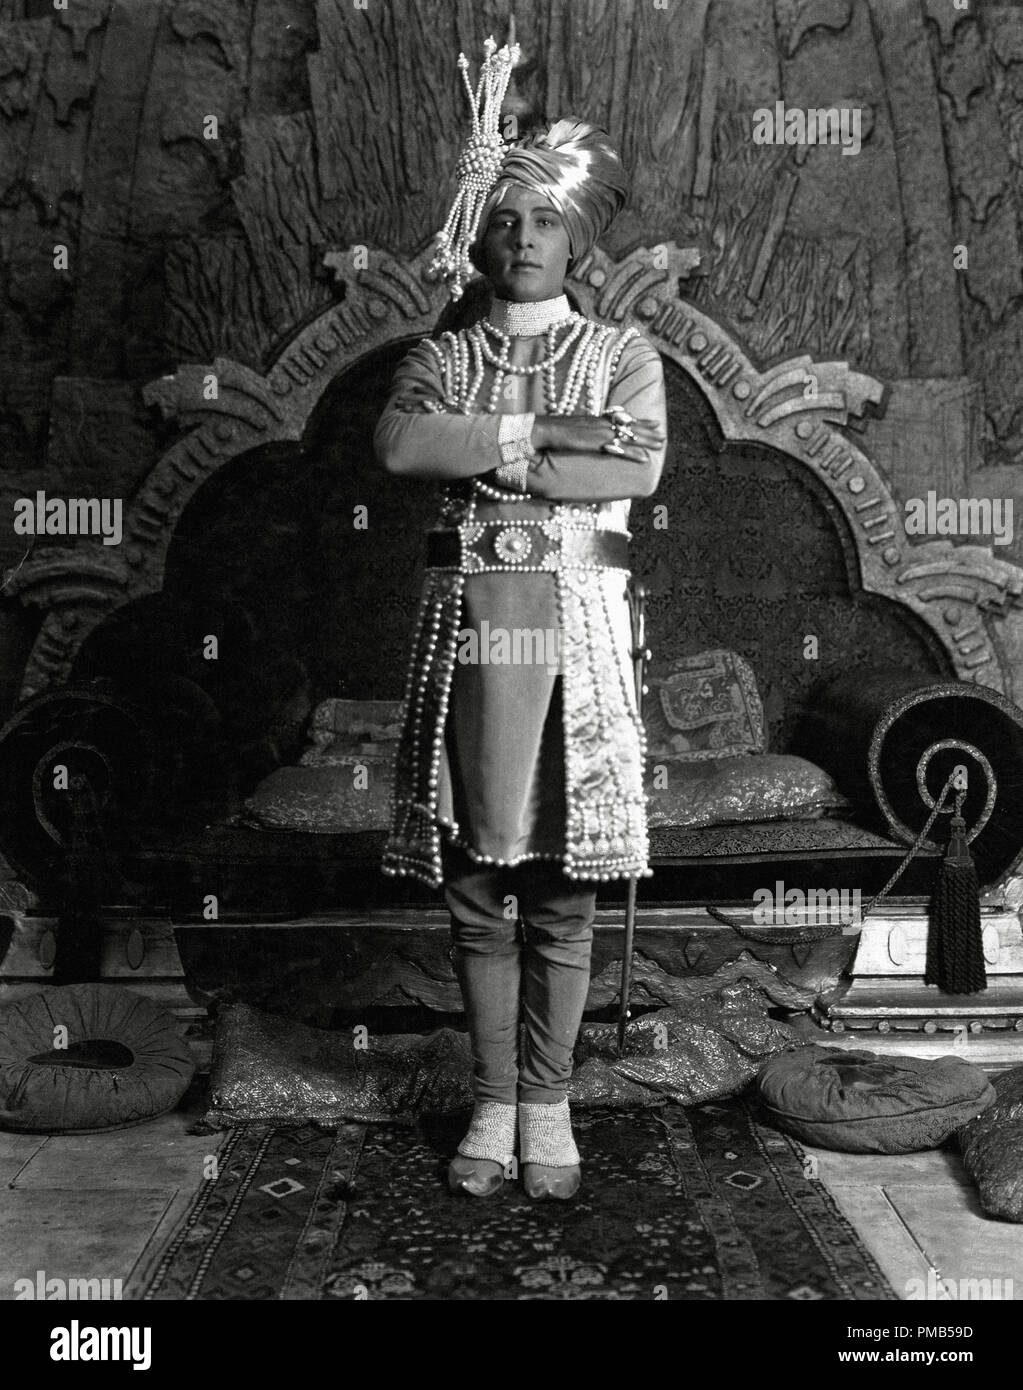 Rodolfo Valentino, el "Joven rajá' 1922 Paramount Archivo de referencia # 33536 443tha Foto de stock